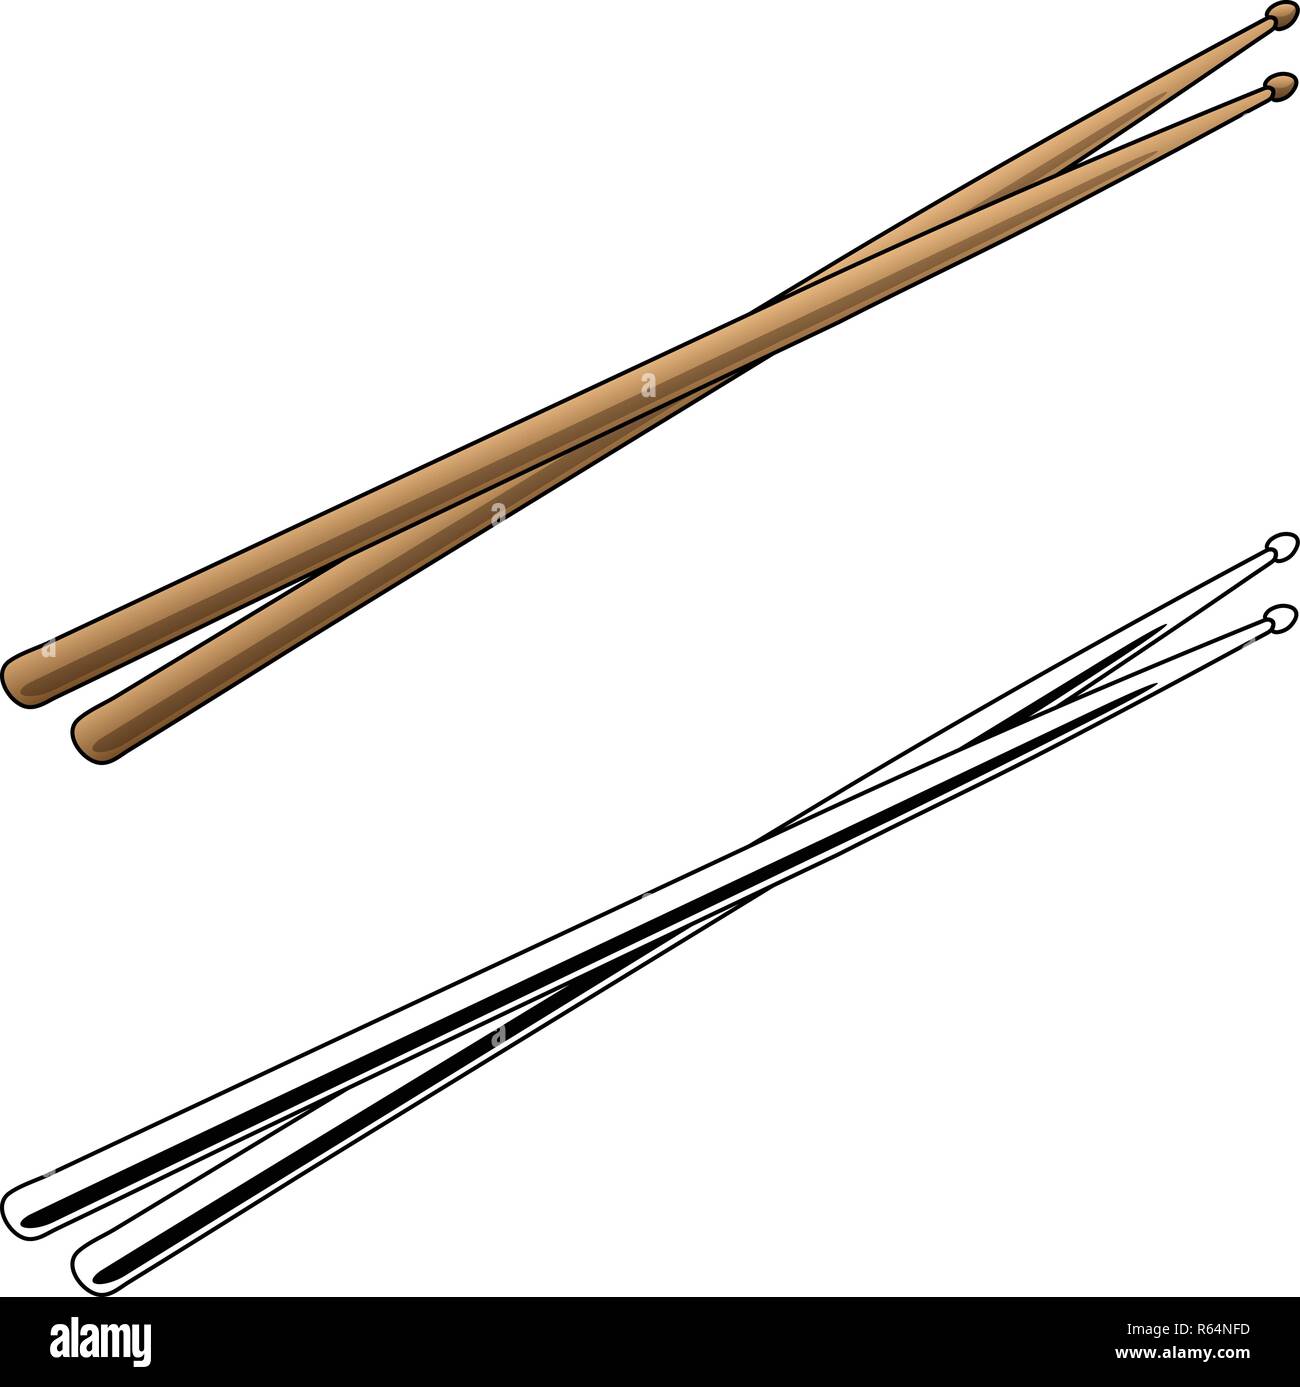 Drum Sticks in Farbe und Schwarz/Weiß-Vector Illustration Stock Vektor